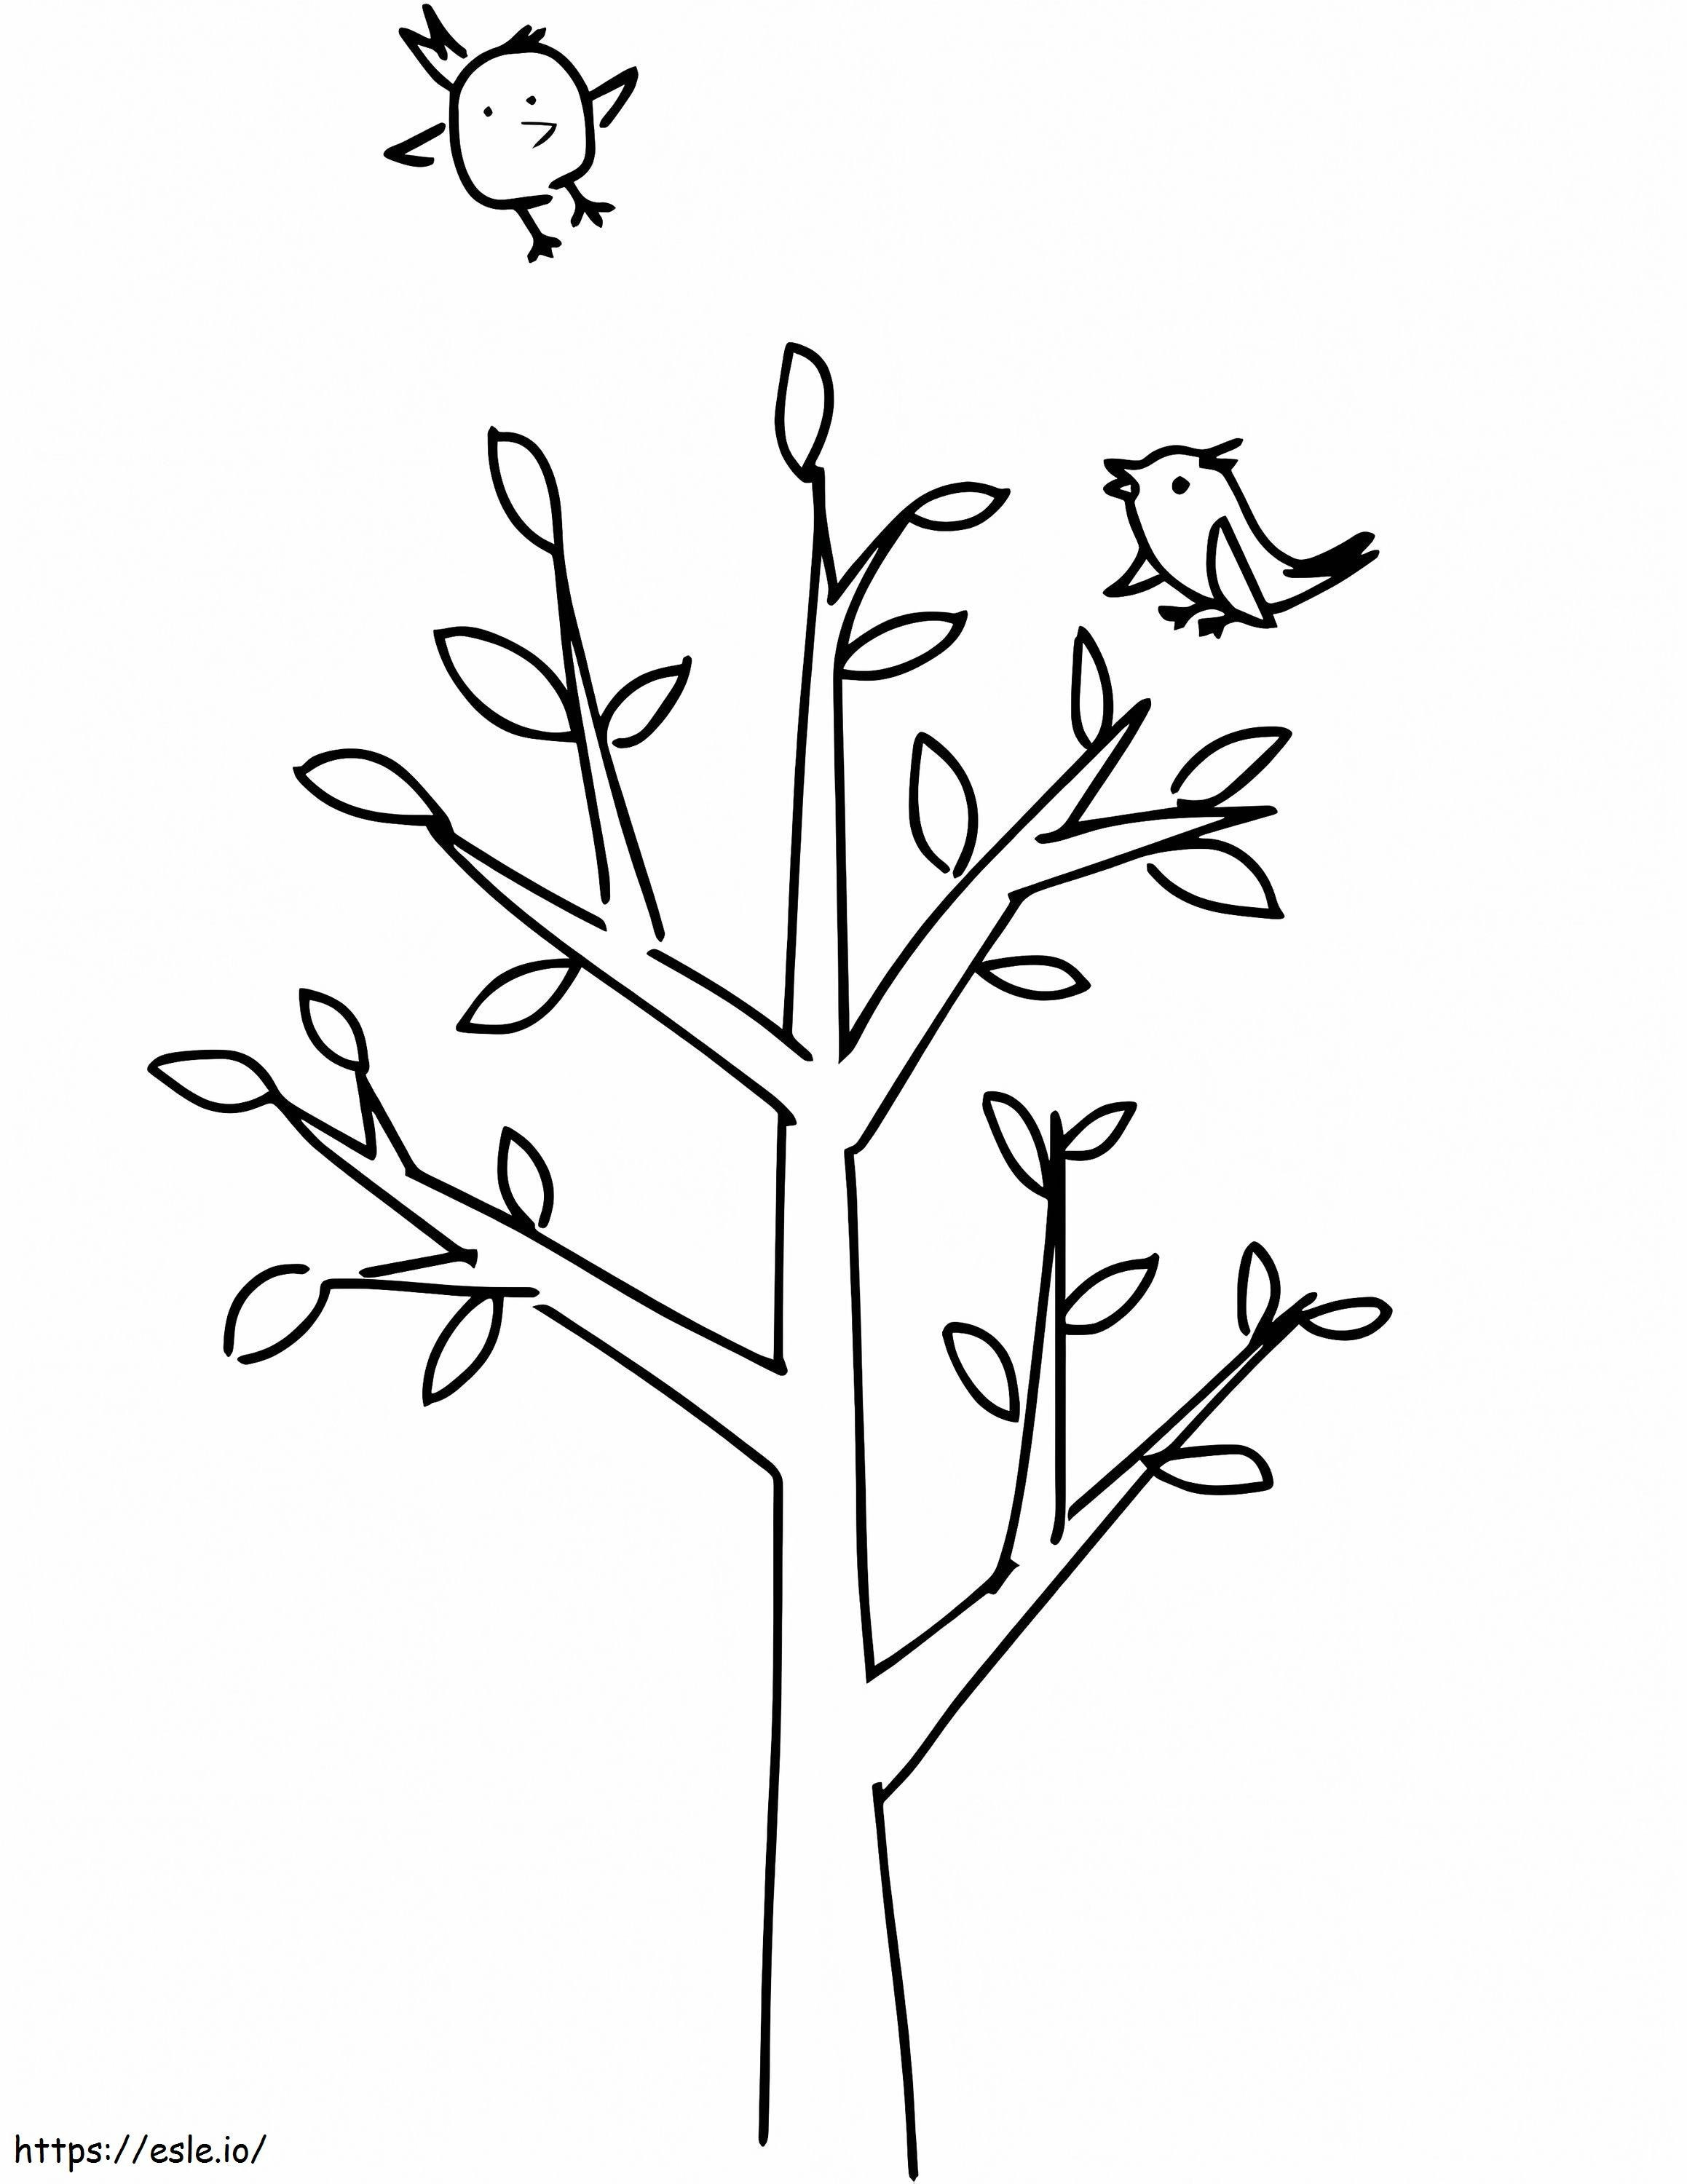 L'albero primaverile 4 da colorare